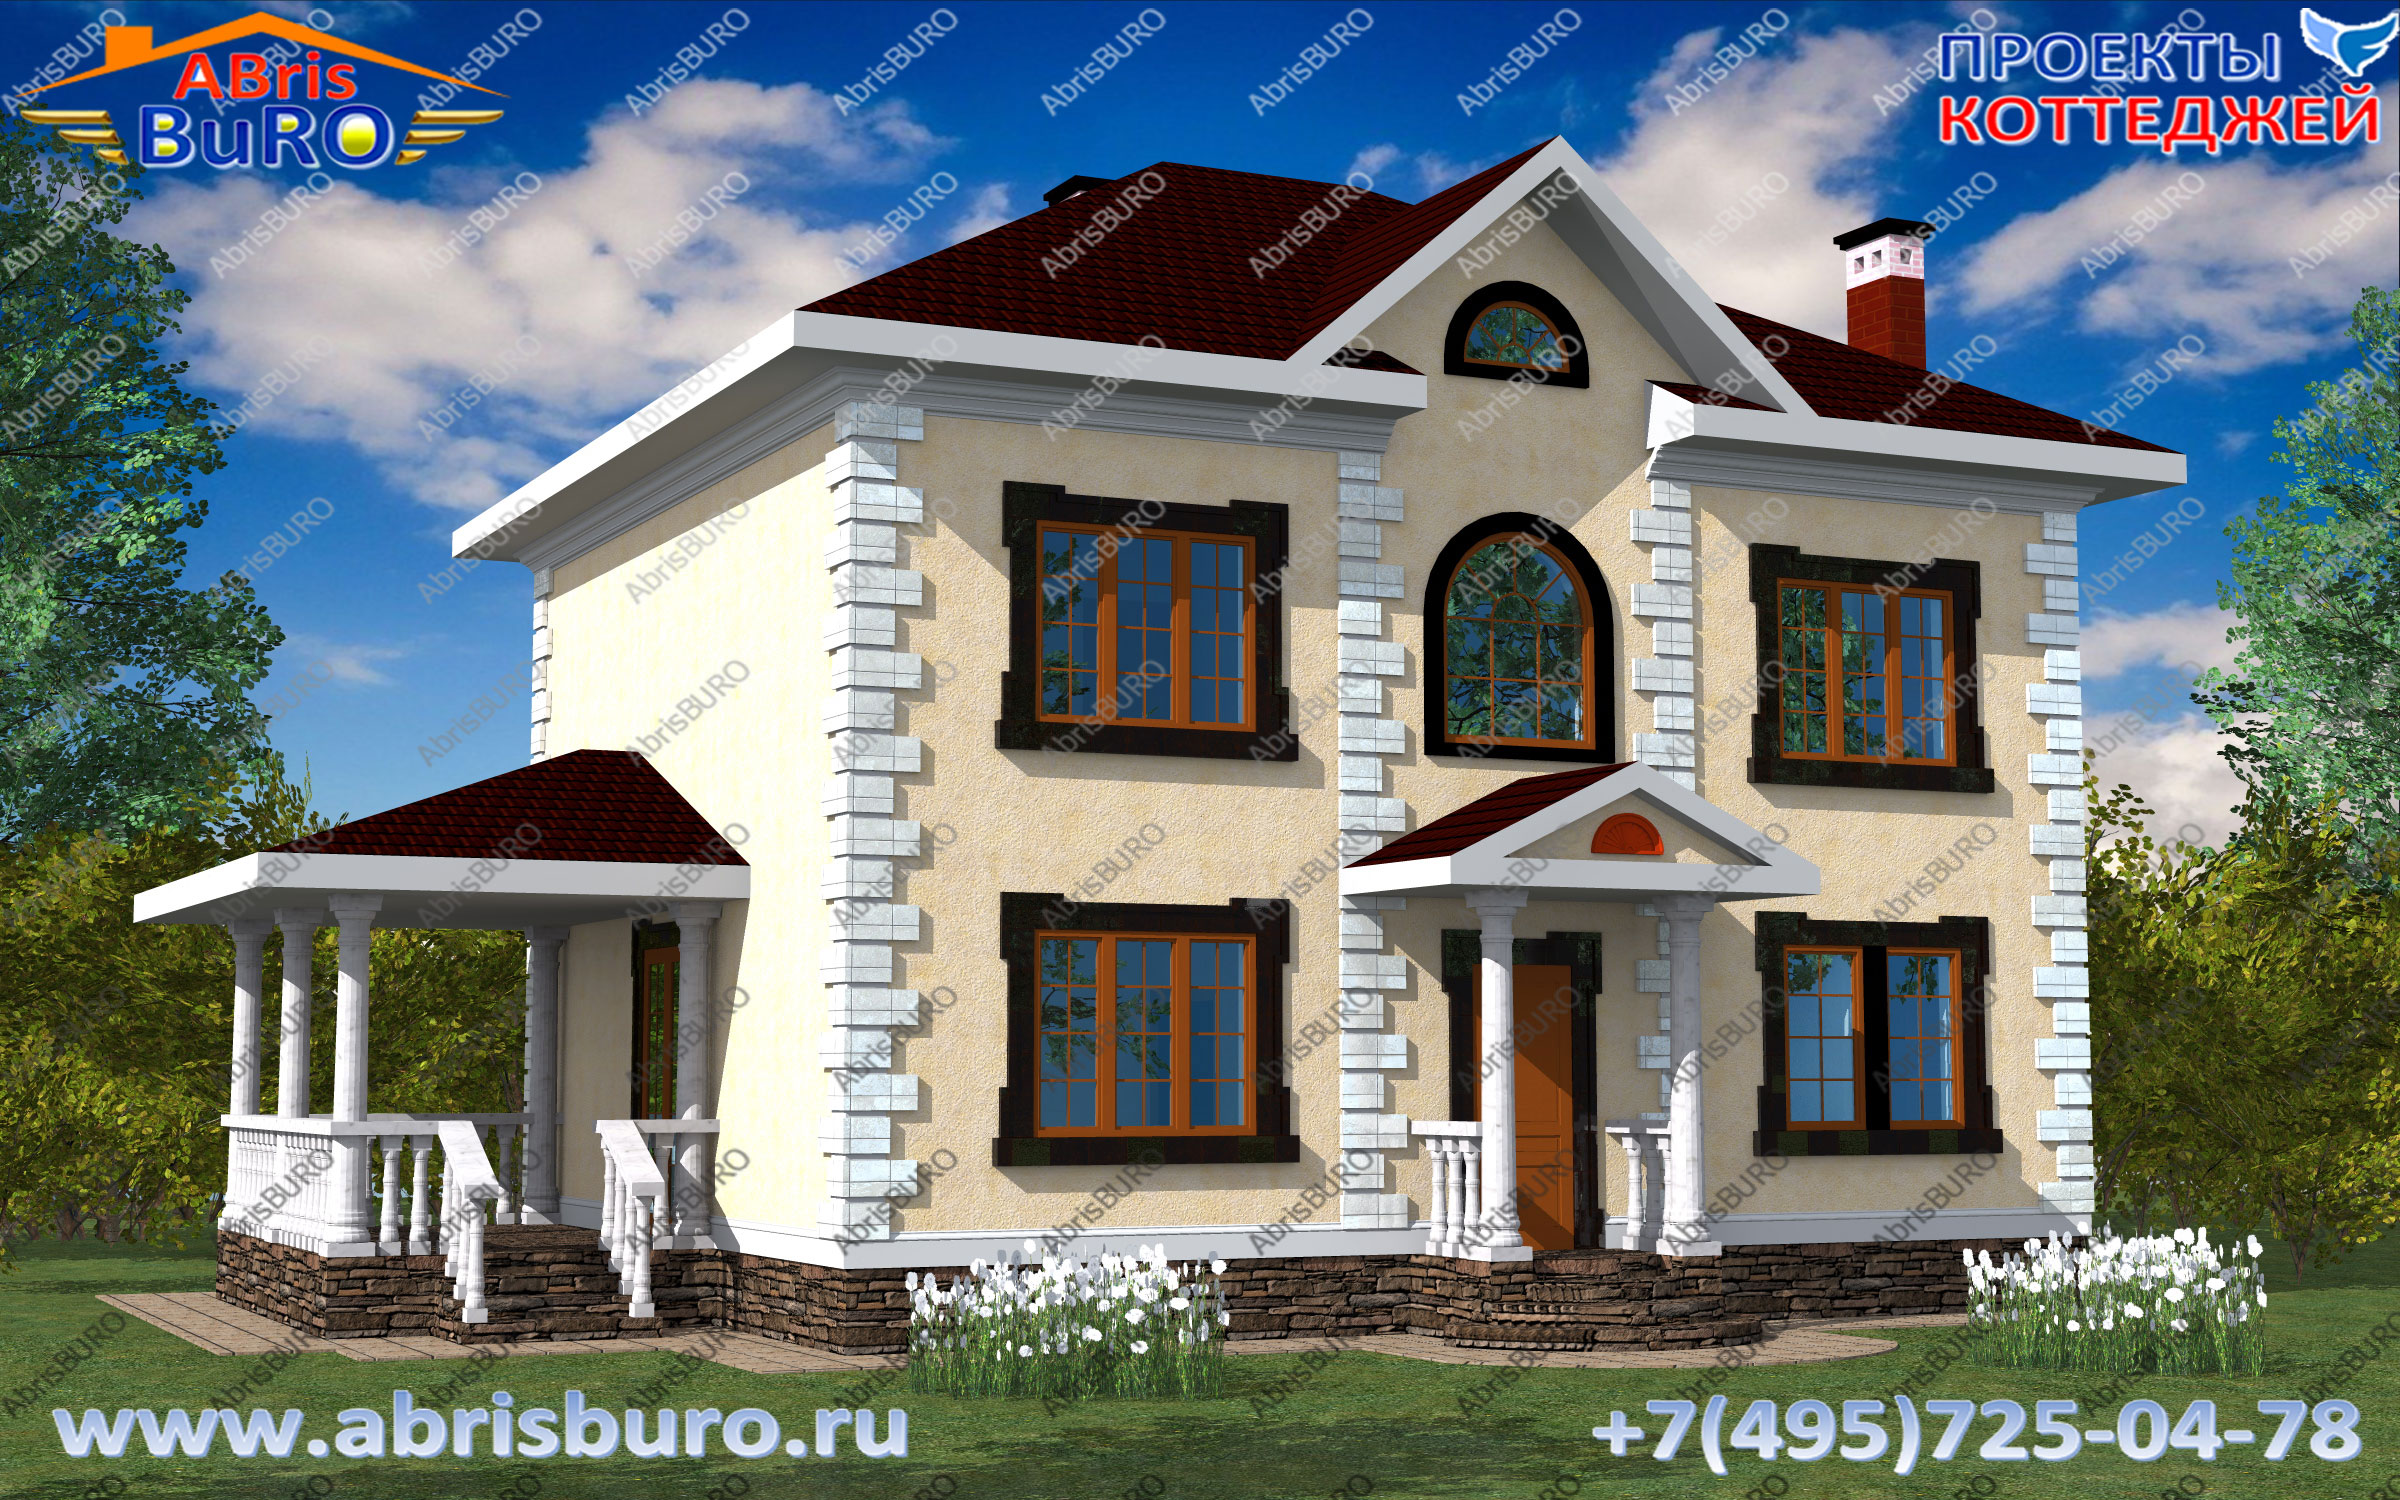 Дома в классическом стиле на сайте www.abrisburo.ru